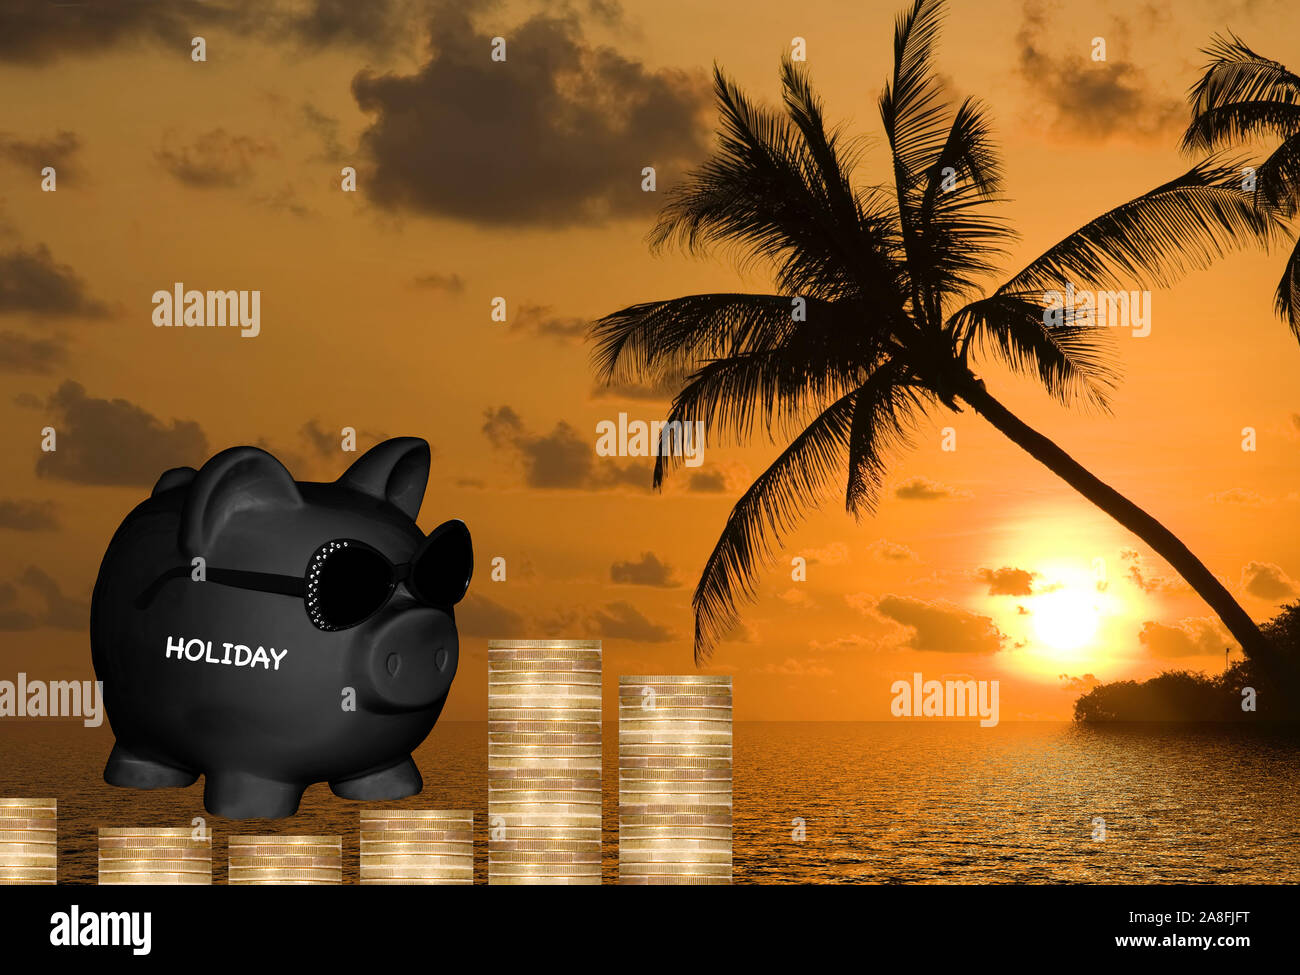 Sparschwein, Sparen, Vorsorge, Aufdruck: Urlaub, Holiday, Palmenstrand, Sonnenuntergang, Karibik, Stock Photo